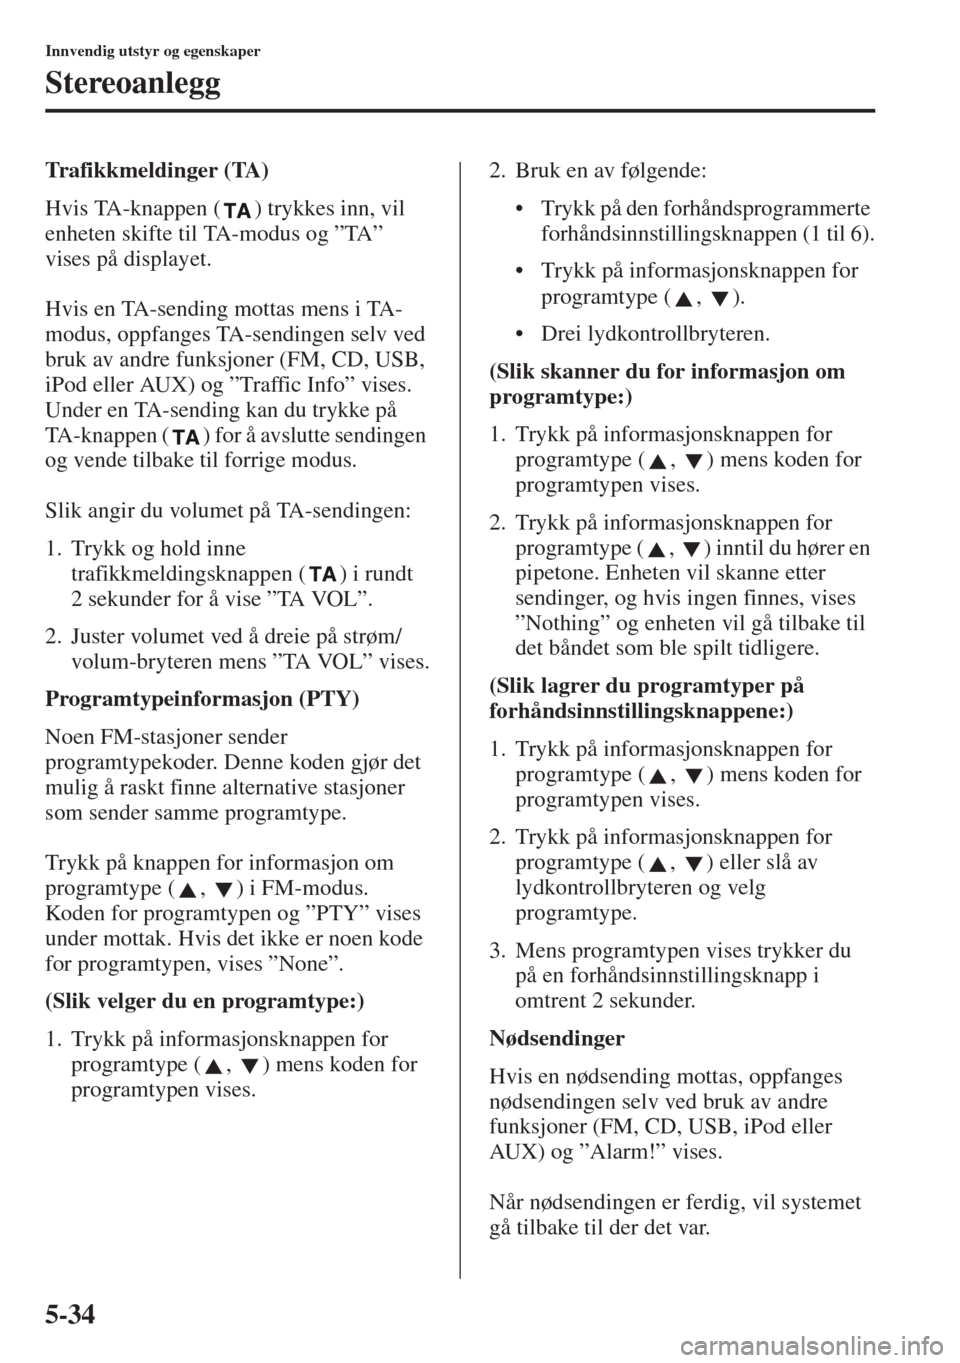 MAZDA MODEL CX-5 2013  Brukerhåndbok (in Norwegian) 5-34
Innvendig utstyr og egenskaper
Stereoanlegg
Trafikkmeldinger (TA)
Hvis TA-knappen ( ) trykkes inn, vil 
enheten skifte til TA-modus og ”TA” 
vises på displayet.
Hvis en TA-sending mottas men